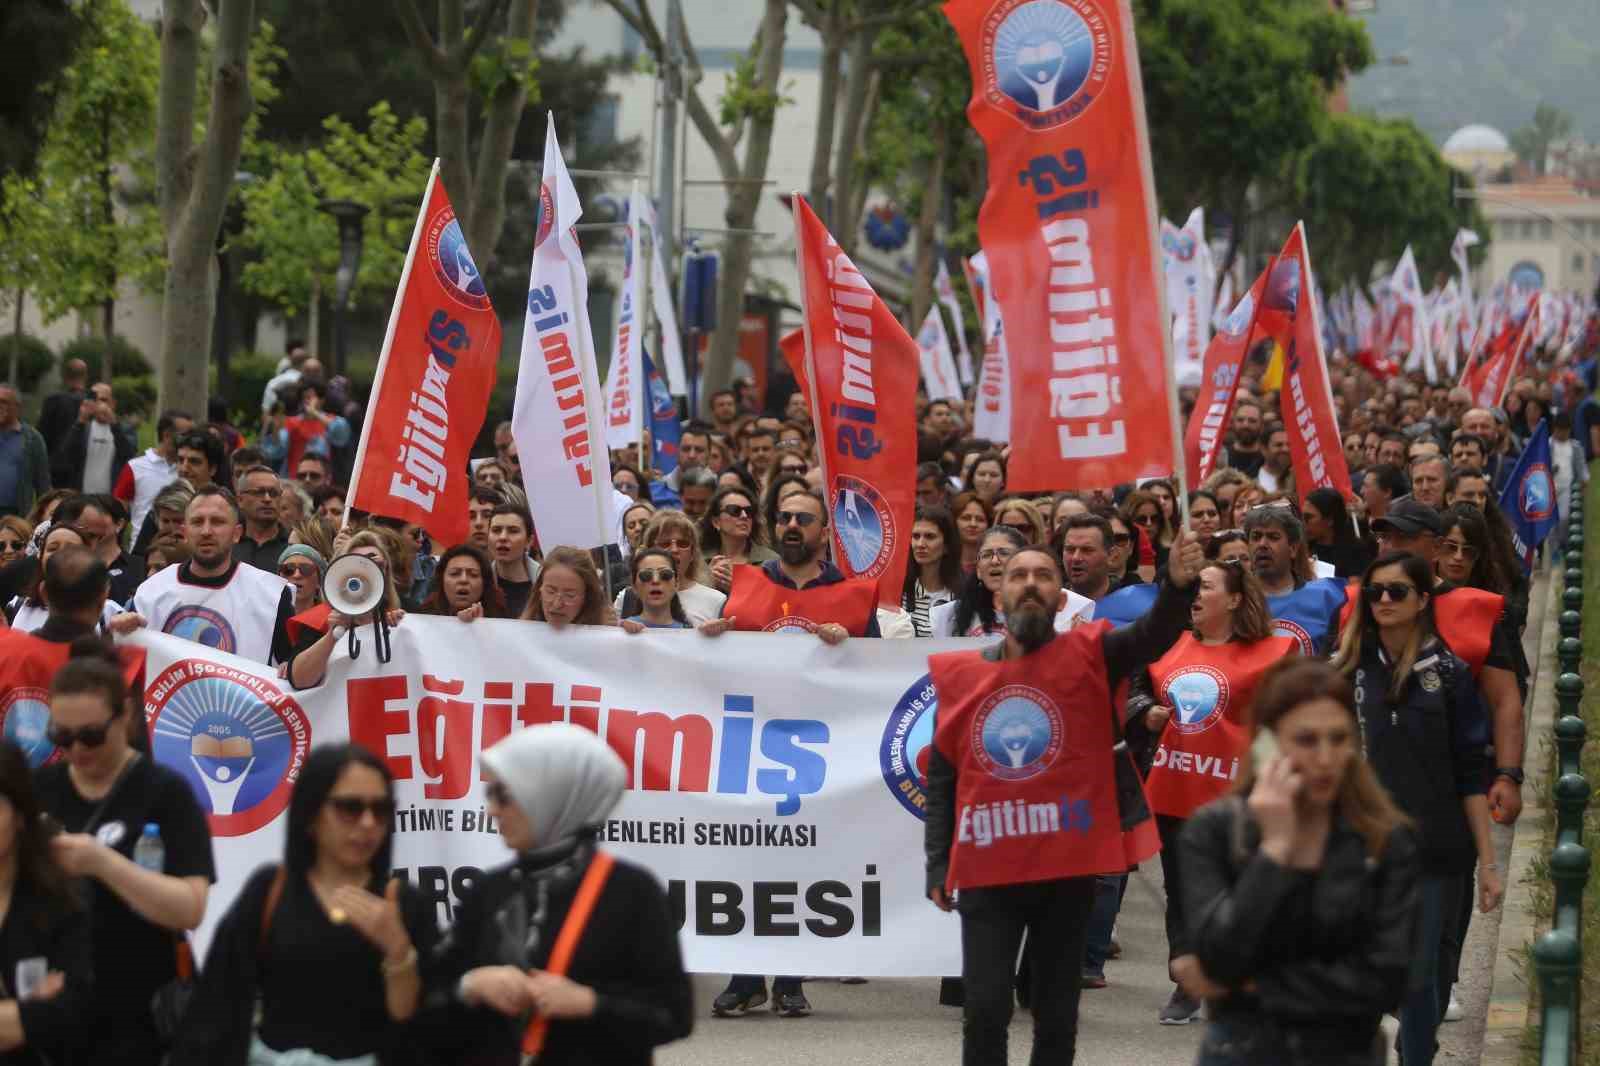 istanbulda bir ogretmenin oldurulmesi bursada protesto edildi 11 6QGeXCP8